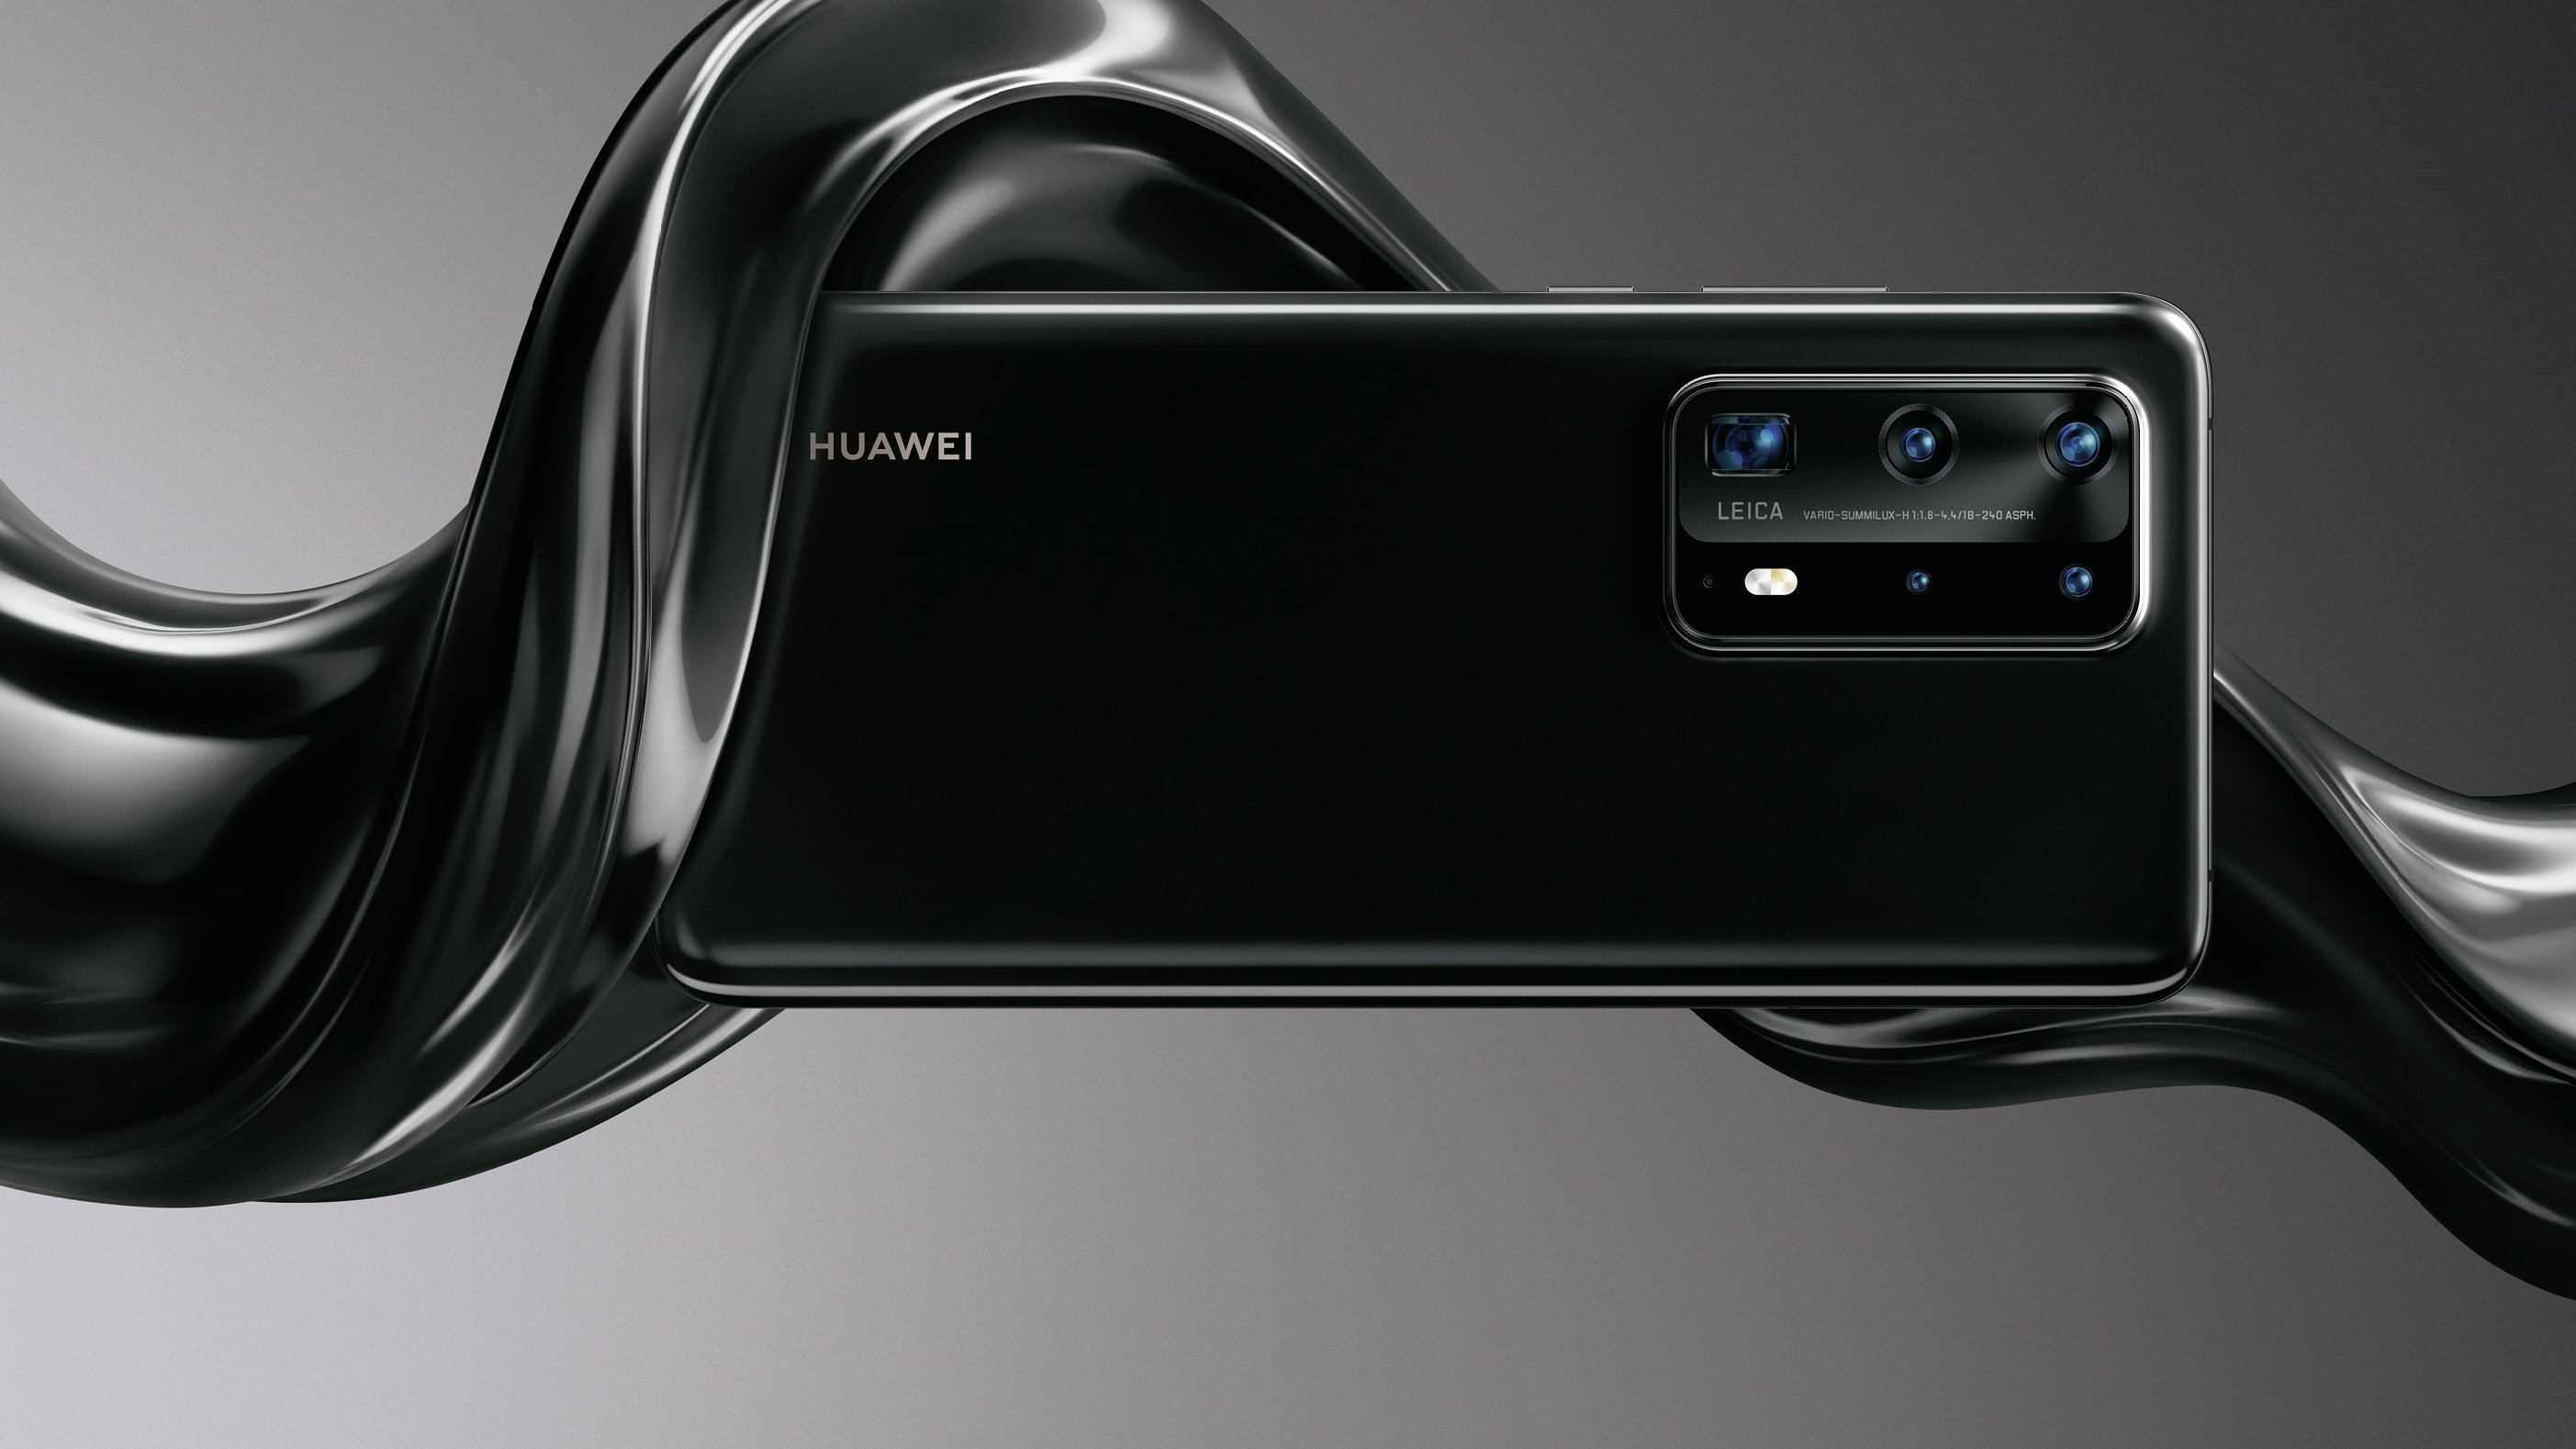 Huawei p70 pro новости